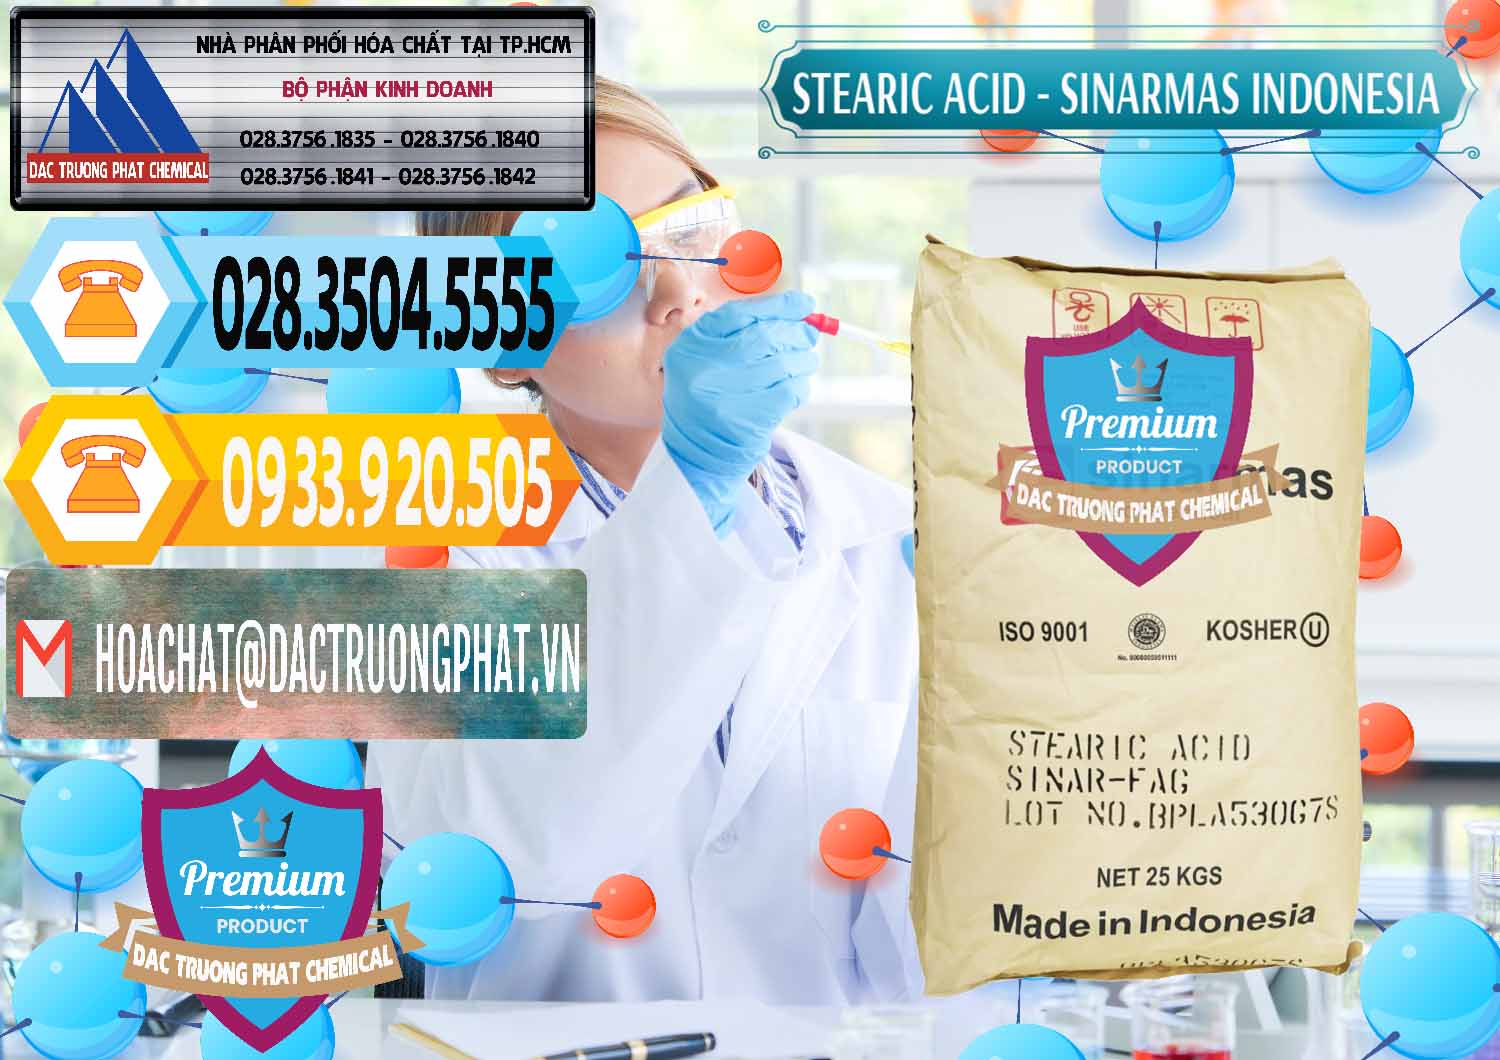 Bán _ cung cấp Axit Stearic - Stearic Acid Sinarmas Indonesia - 0389 - Phân phối - nhập khẩu hóa chất tại TP.HCM - hoachattayrua.net